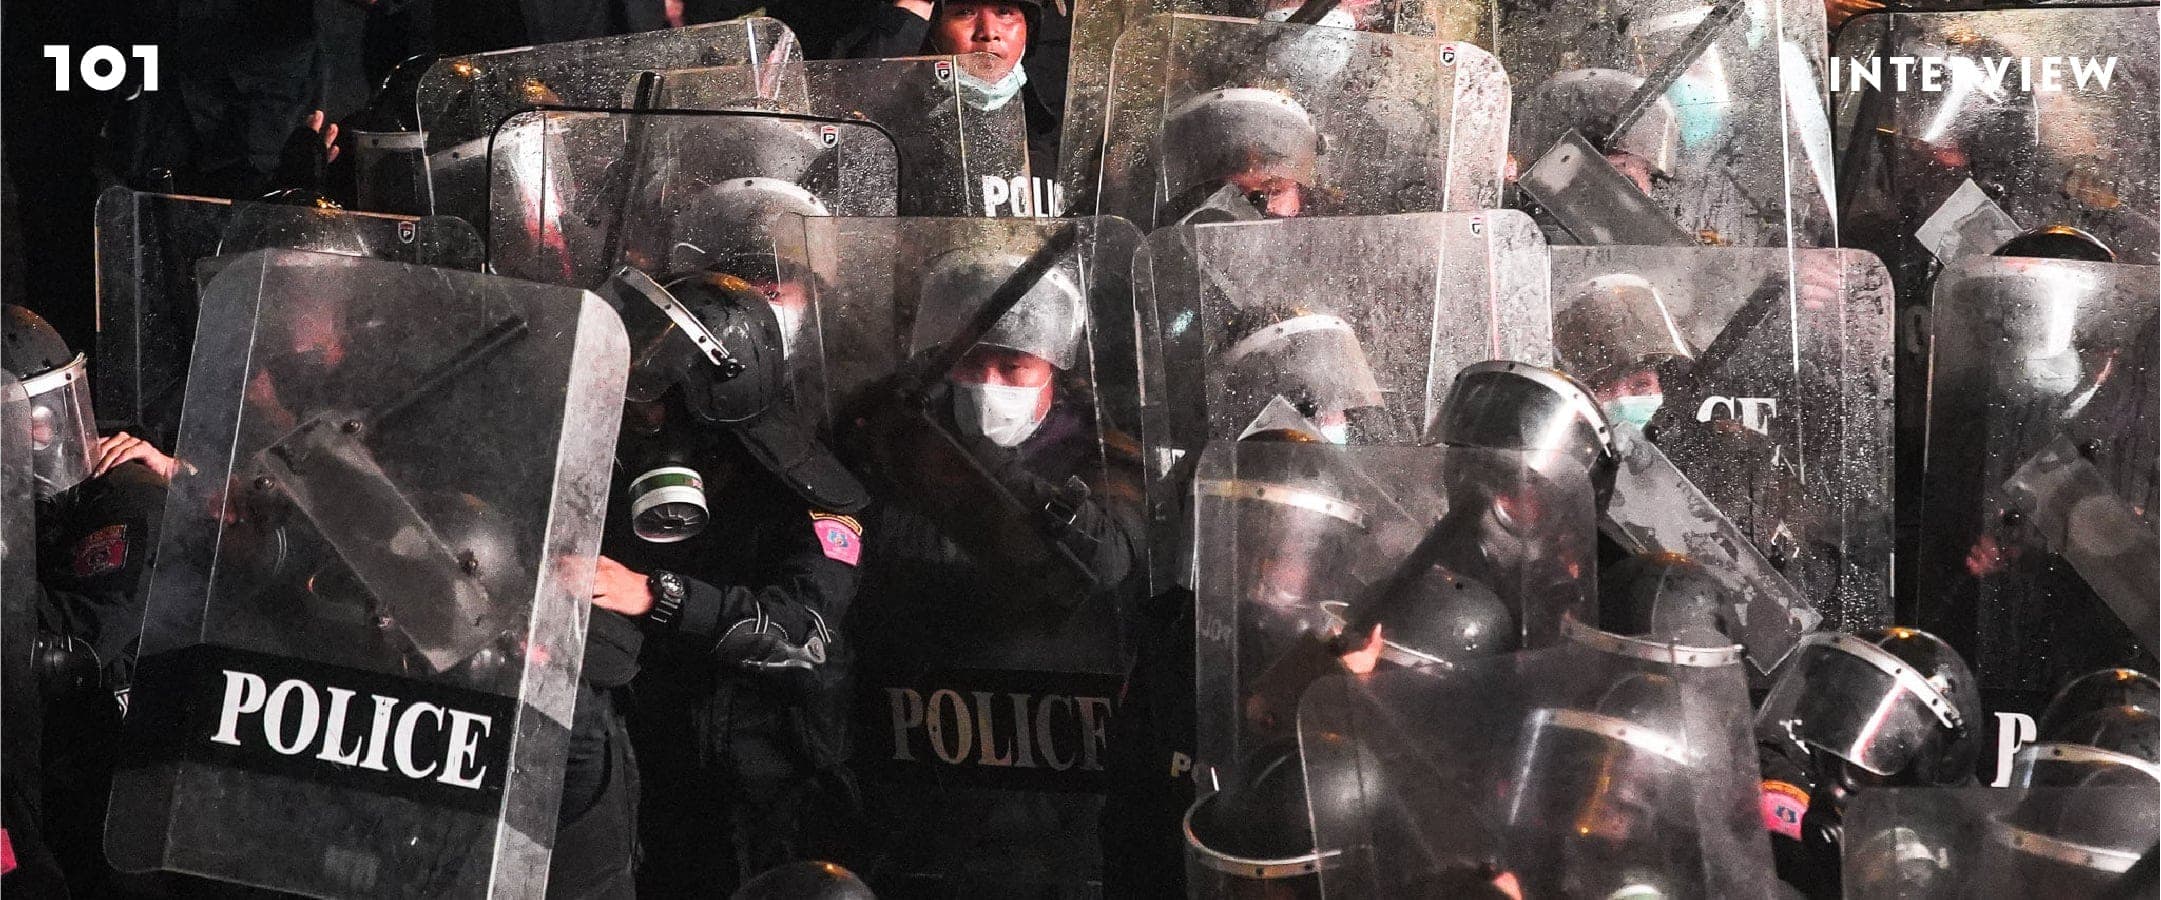 ตำรวจประชาธิปไตย : ฟังเสียงคนใน ปฏิรูปตำรวจให้เคียงข้างประชาชน